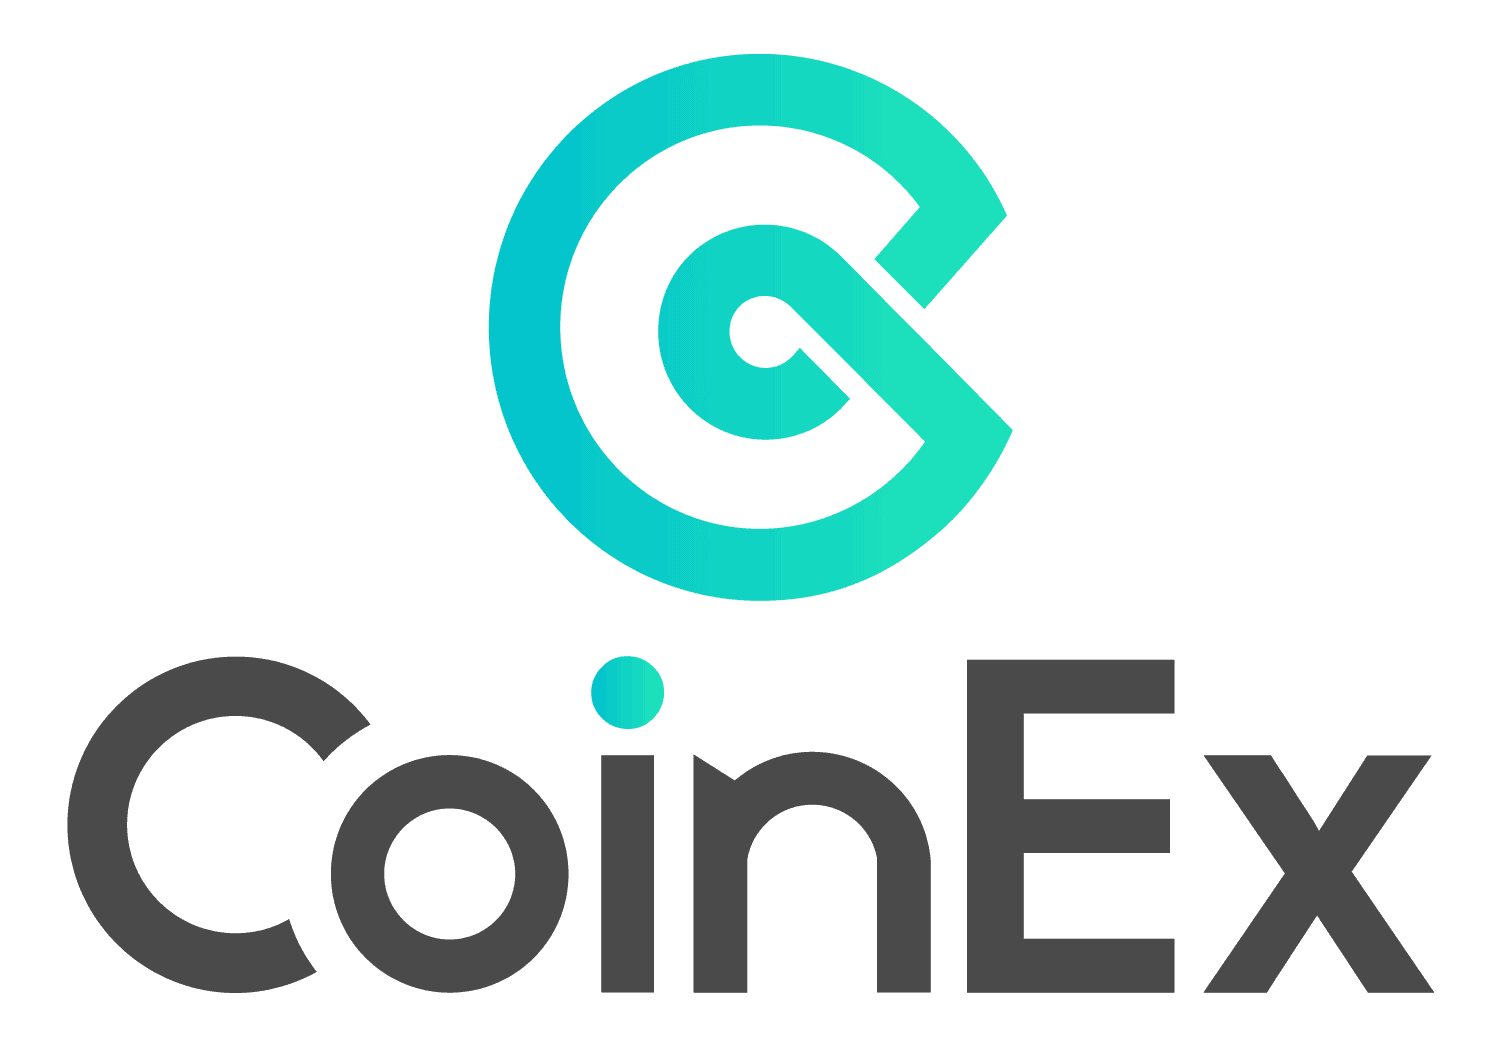 CoinEx Logo